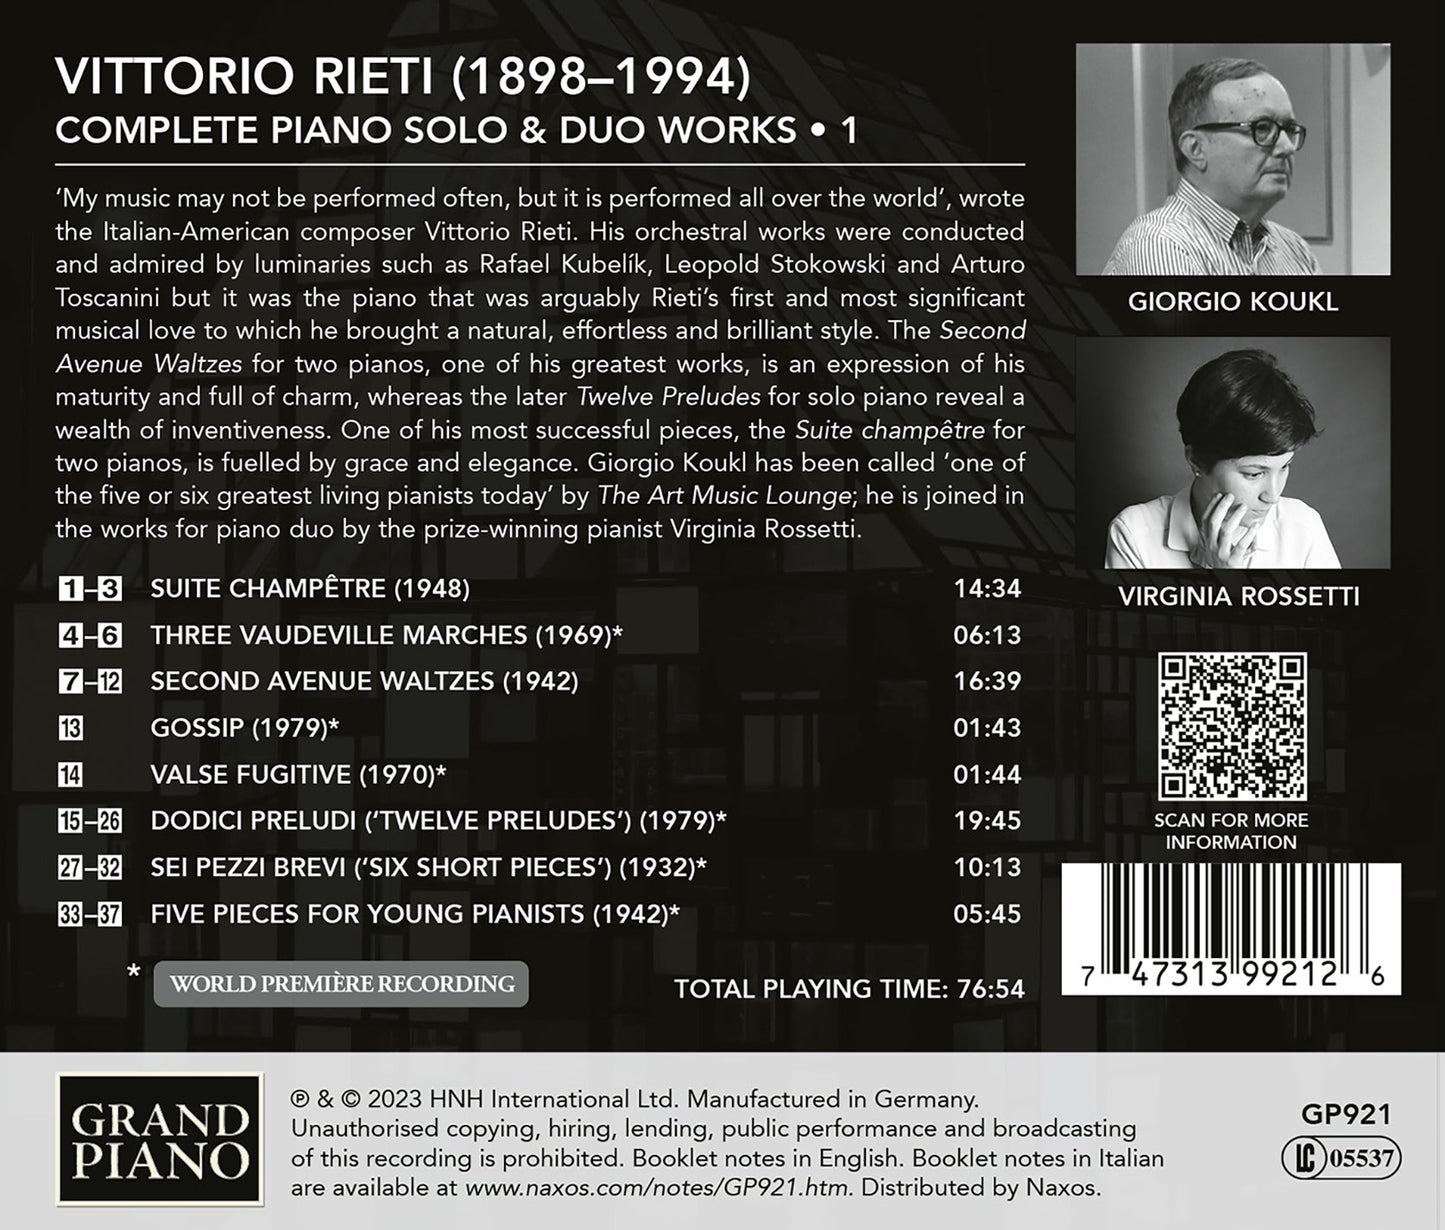 Rieti: Complete Piano Solo & Duo Works, Vol. 1